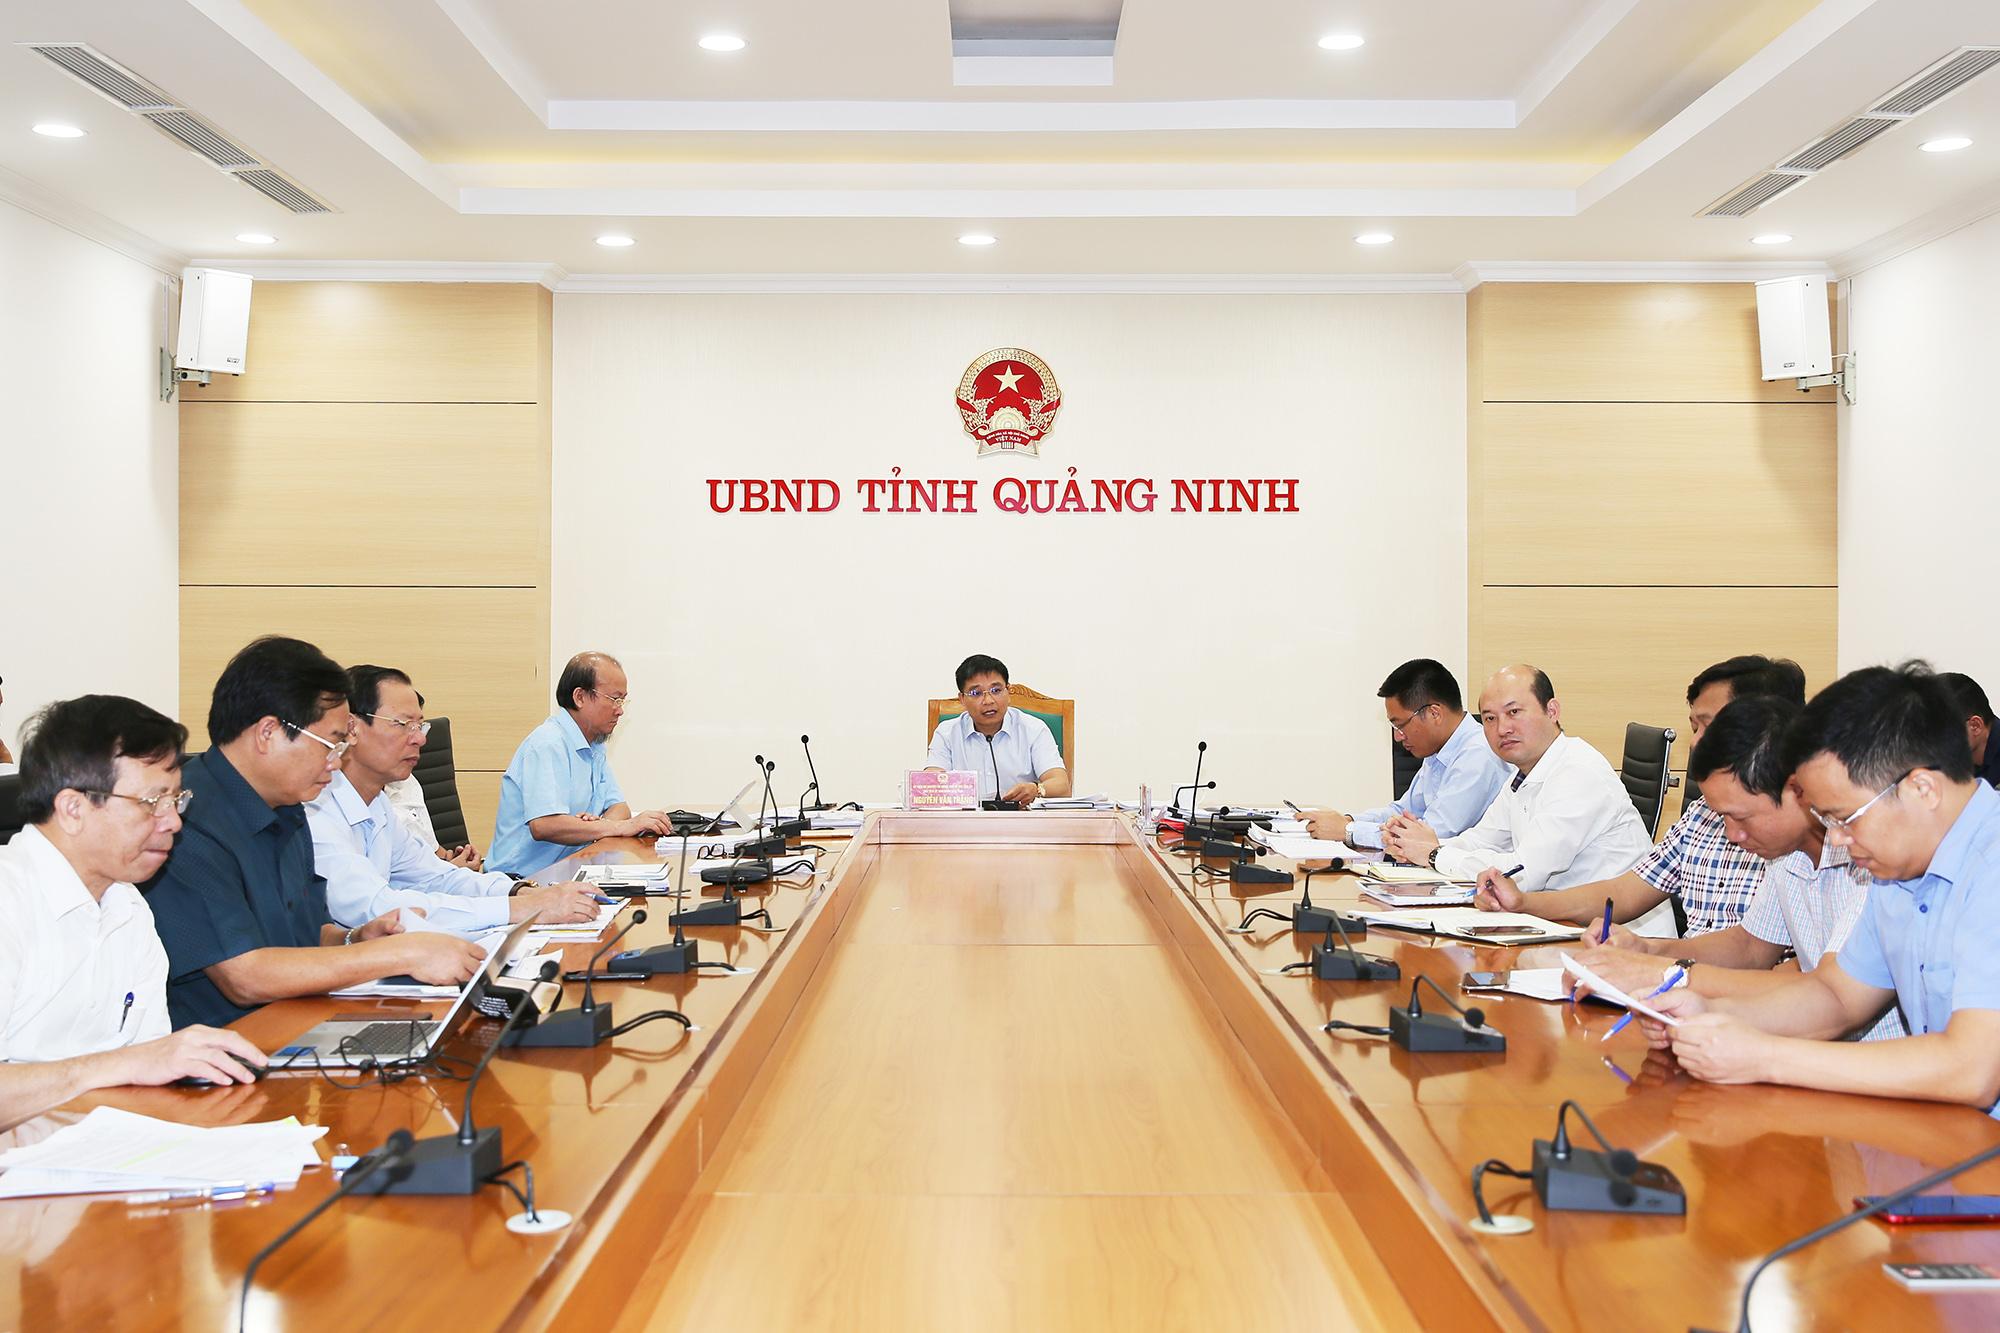 Đồng chí Nguyễn Văn Thắng, Phó Bí thư Tỉnh ủy, Chủ tịch UBND tỉnh chủ trì cuộc họp.